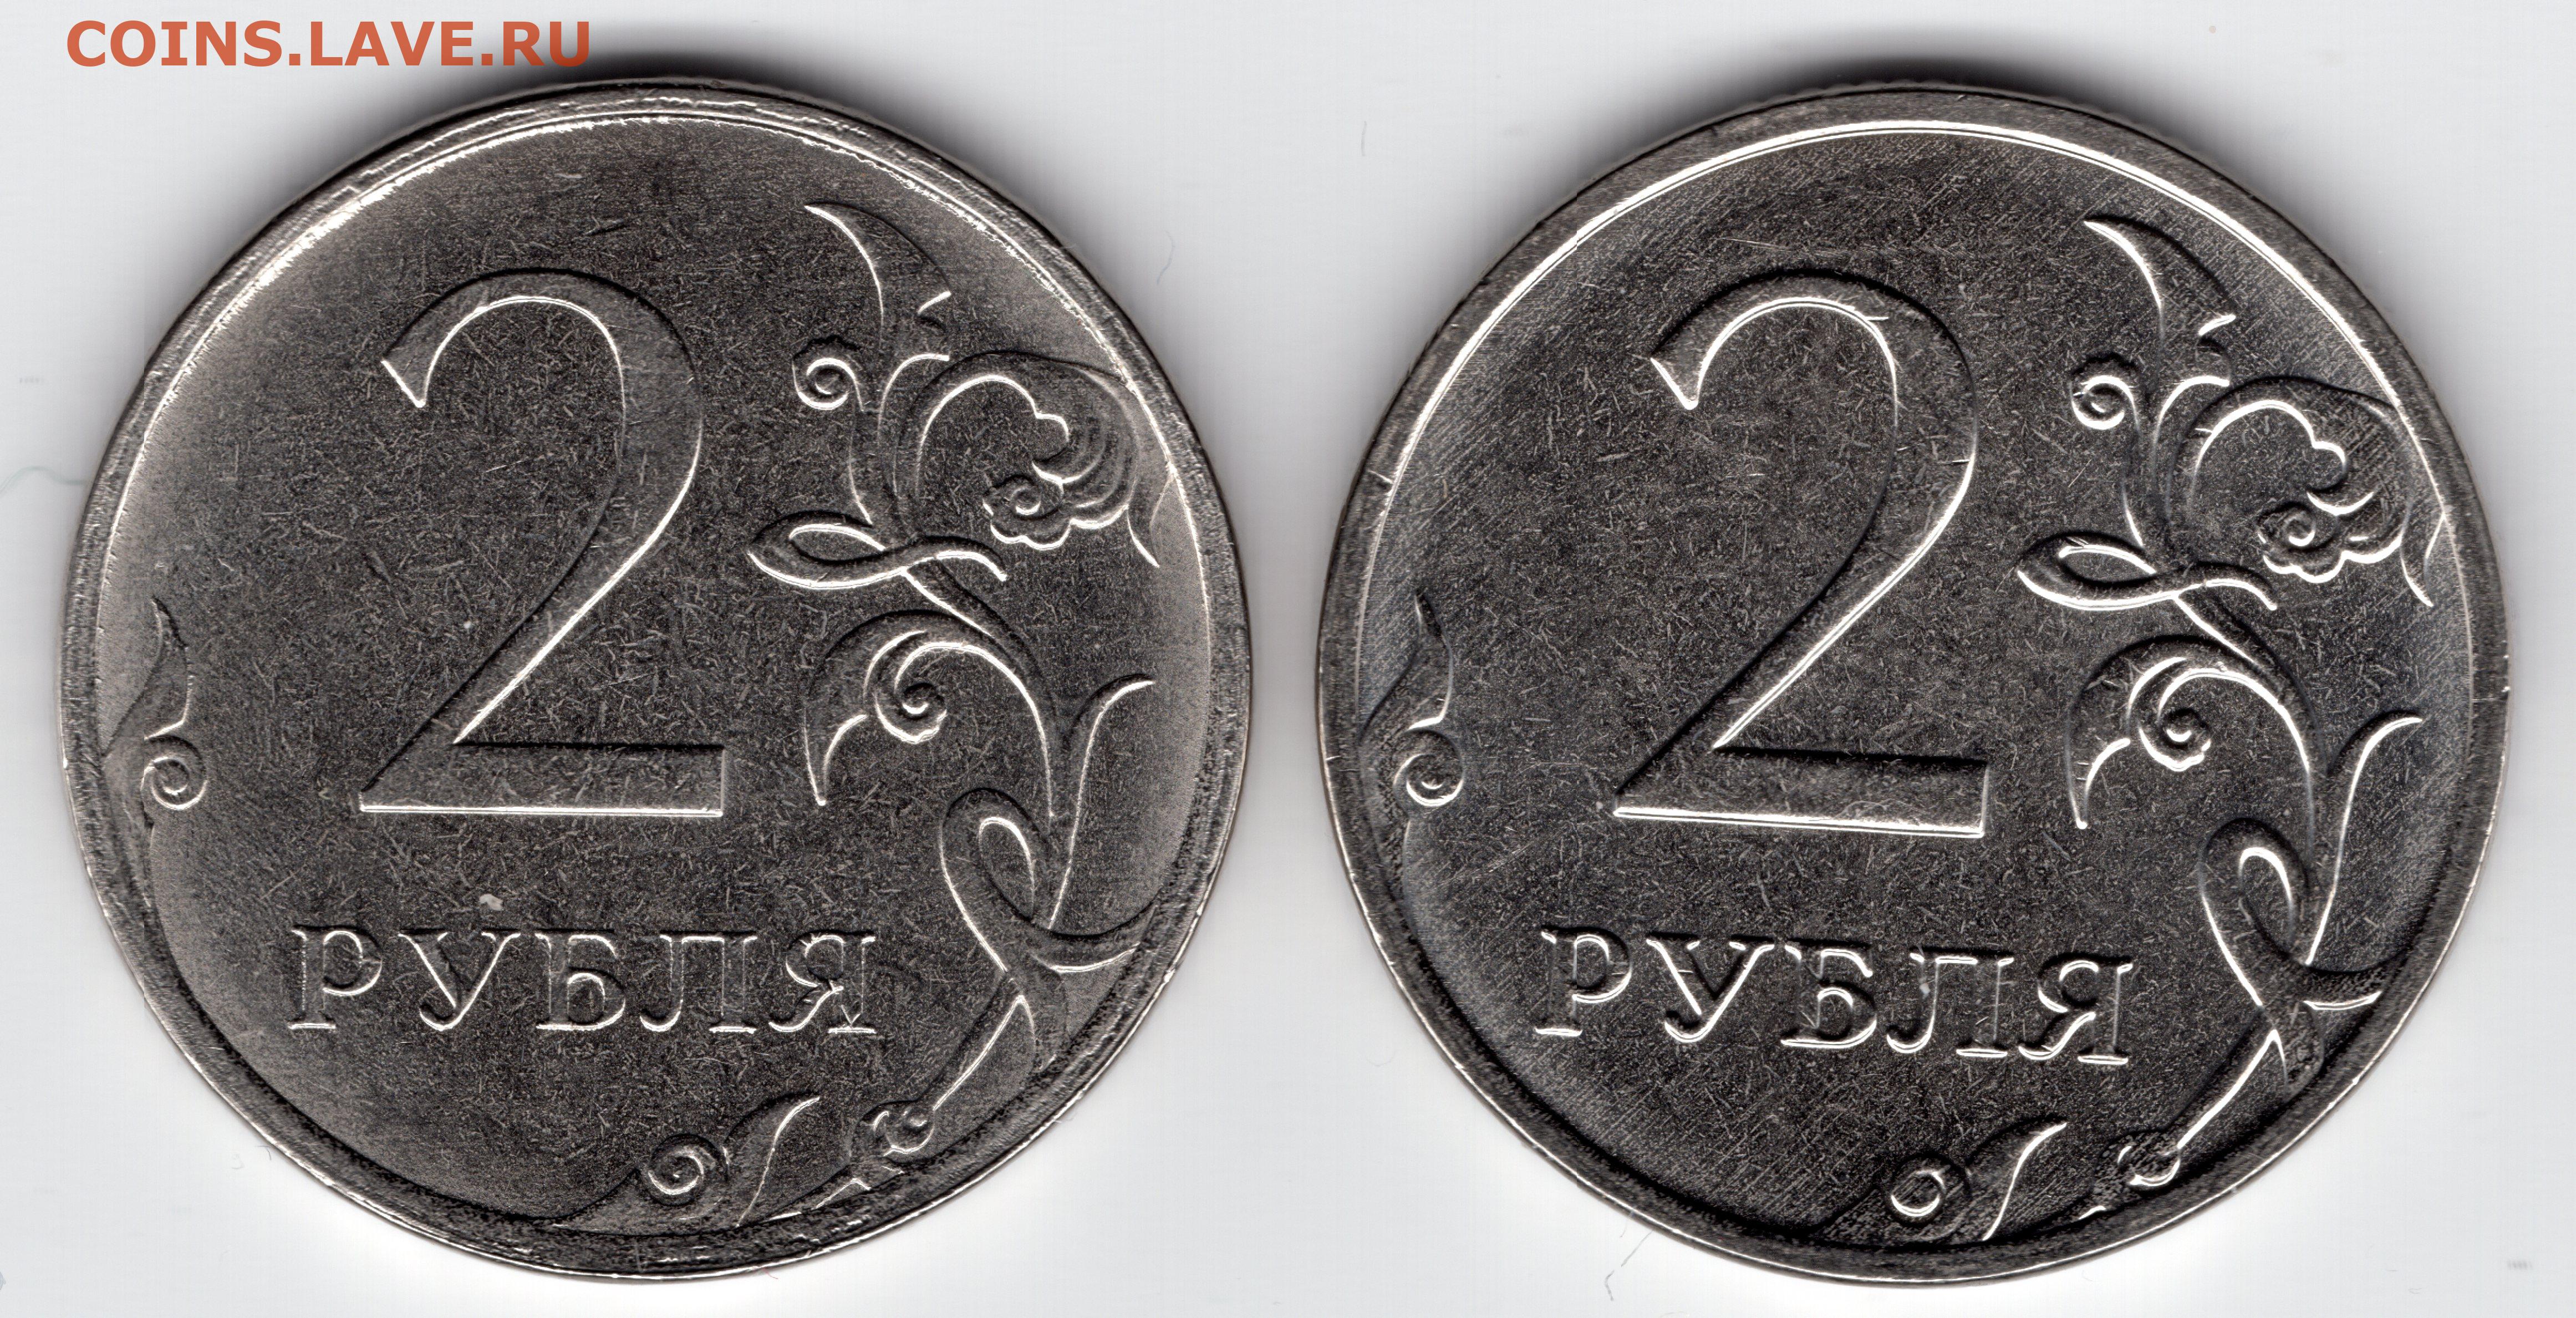 80 рублей штука. Монета два рубля. Брак монеты 5 рублей 2009г. 1 Рубль шт а шт б. 2 Рубля 2012 с браком.